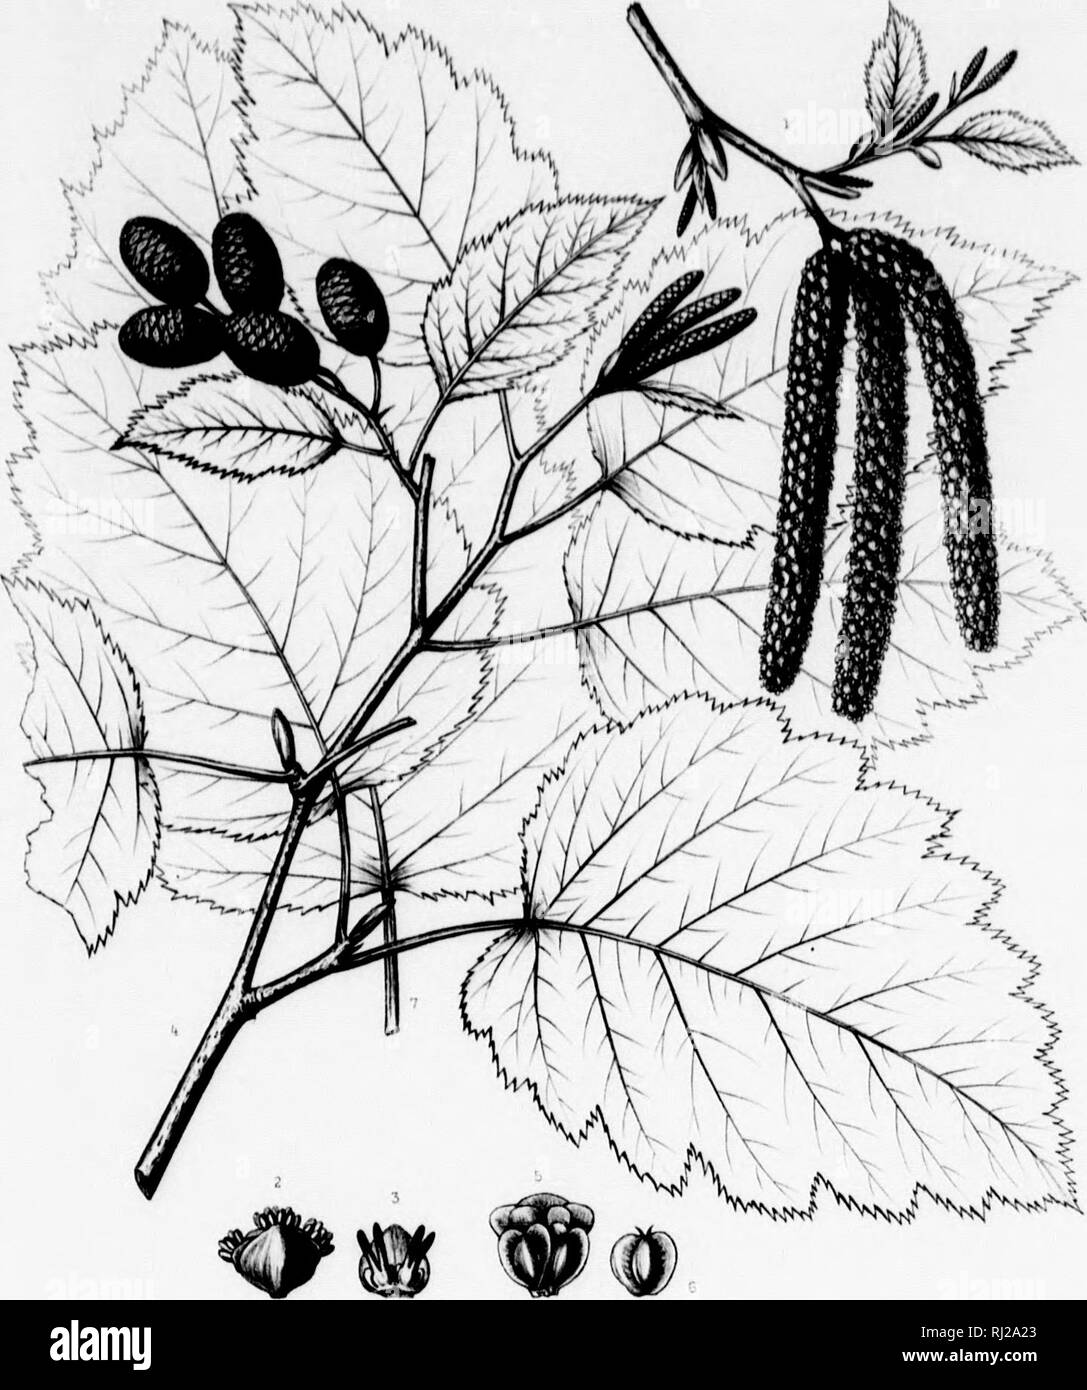 . The silva of North America [microform] : a description of the tree which grow naturally in North America exclusive of Mexico. Trees; Trees; Arbres; Arbres. &gt;n^ittÂ«(l |iAiiii'li ll'lttfH uf III II Nixtfl-lllll uf Ljiltftl HOinctlllM-K ) Hv)i (UffliUiK â¢â¢! hit'kfuvd at tin II Alilpr of 11 Ixirhooil of tl- Ti-r I'rak nwr Y'4l: unilml fÂ«l alHiTr i, uiiift n^ffiun. Til* â¢ i/iJm, Naiull, Hi.:' I il nil Ihs buli&gt; tuinM nf ViulnnKt&gt;-r llic llliin MiiuiiU'f four UiuutMnil f&lt;-' f%Â» Uw tltwoTeirr ^ iiha Knuklin to il.r ng llic rcini IHl'.i Silv* of North America Tab DCCXXVII. t ii ; Stock Photo